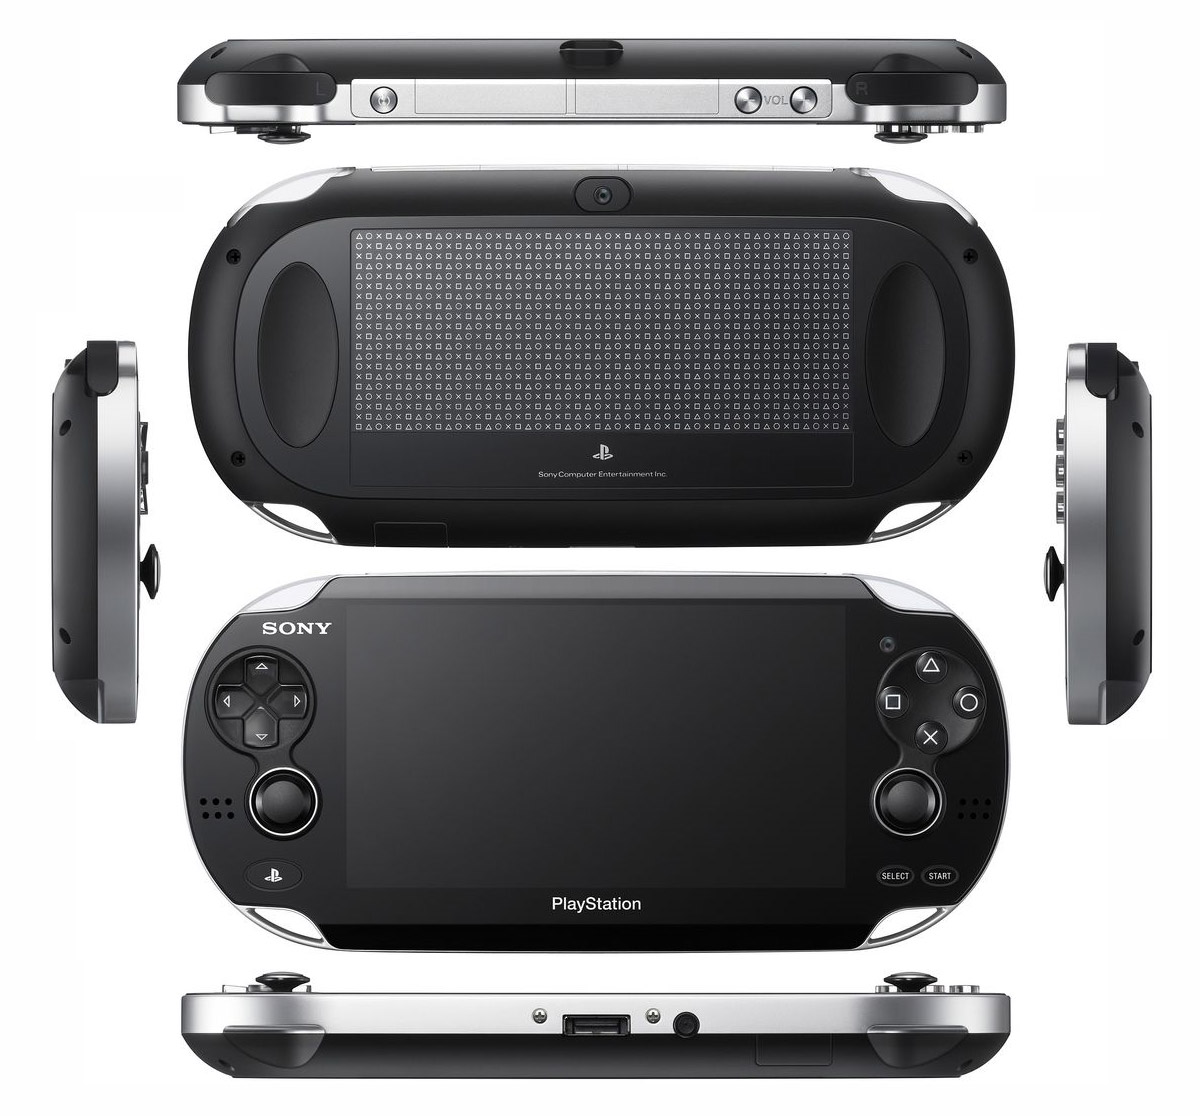 Immagine pubblicata in relazione al seguente contenuto: Sony annuncia la data di lancio della console PlayStation Vita | Nome immagine: news15941_1.jpg